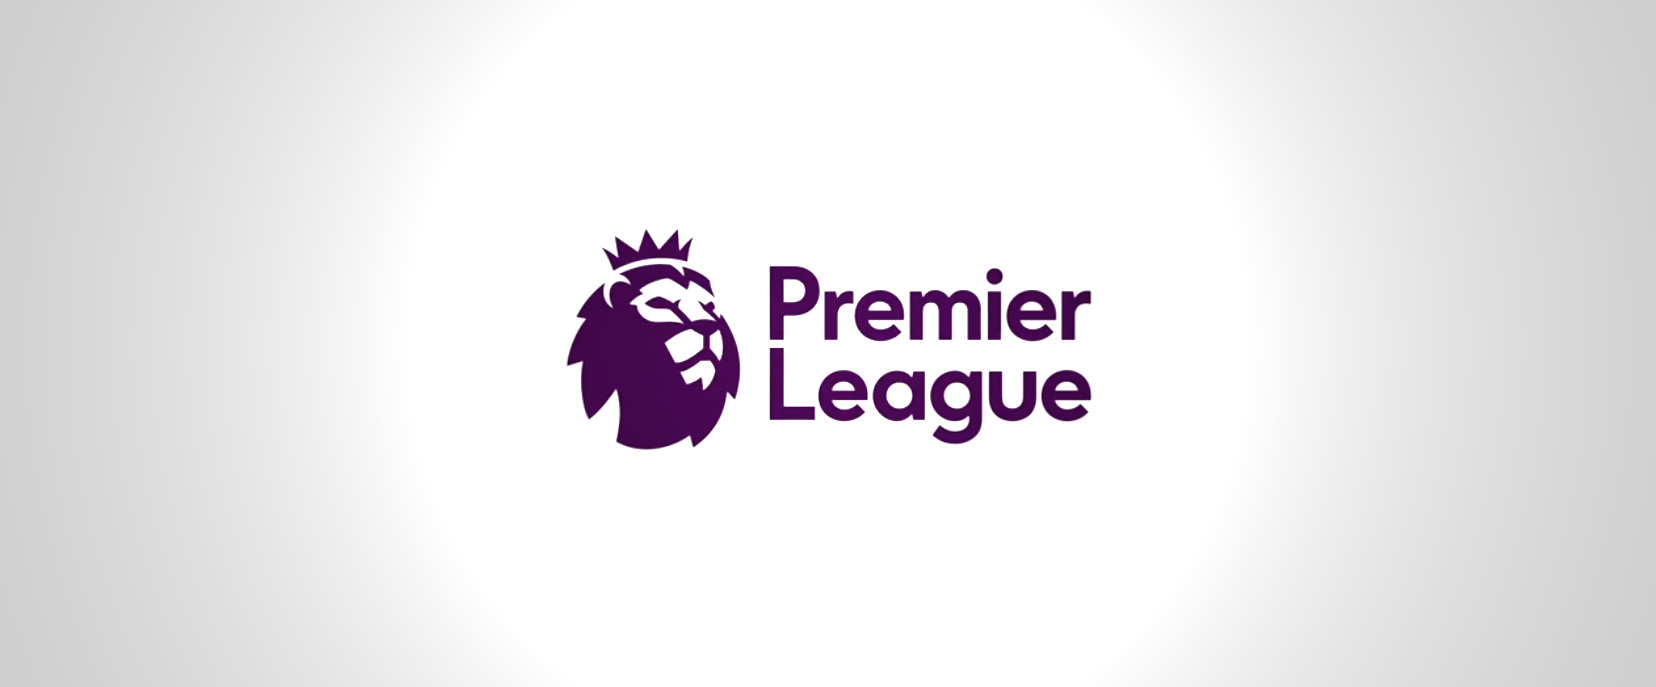 Премьер-лига представила новый логотип чемпионата